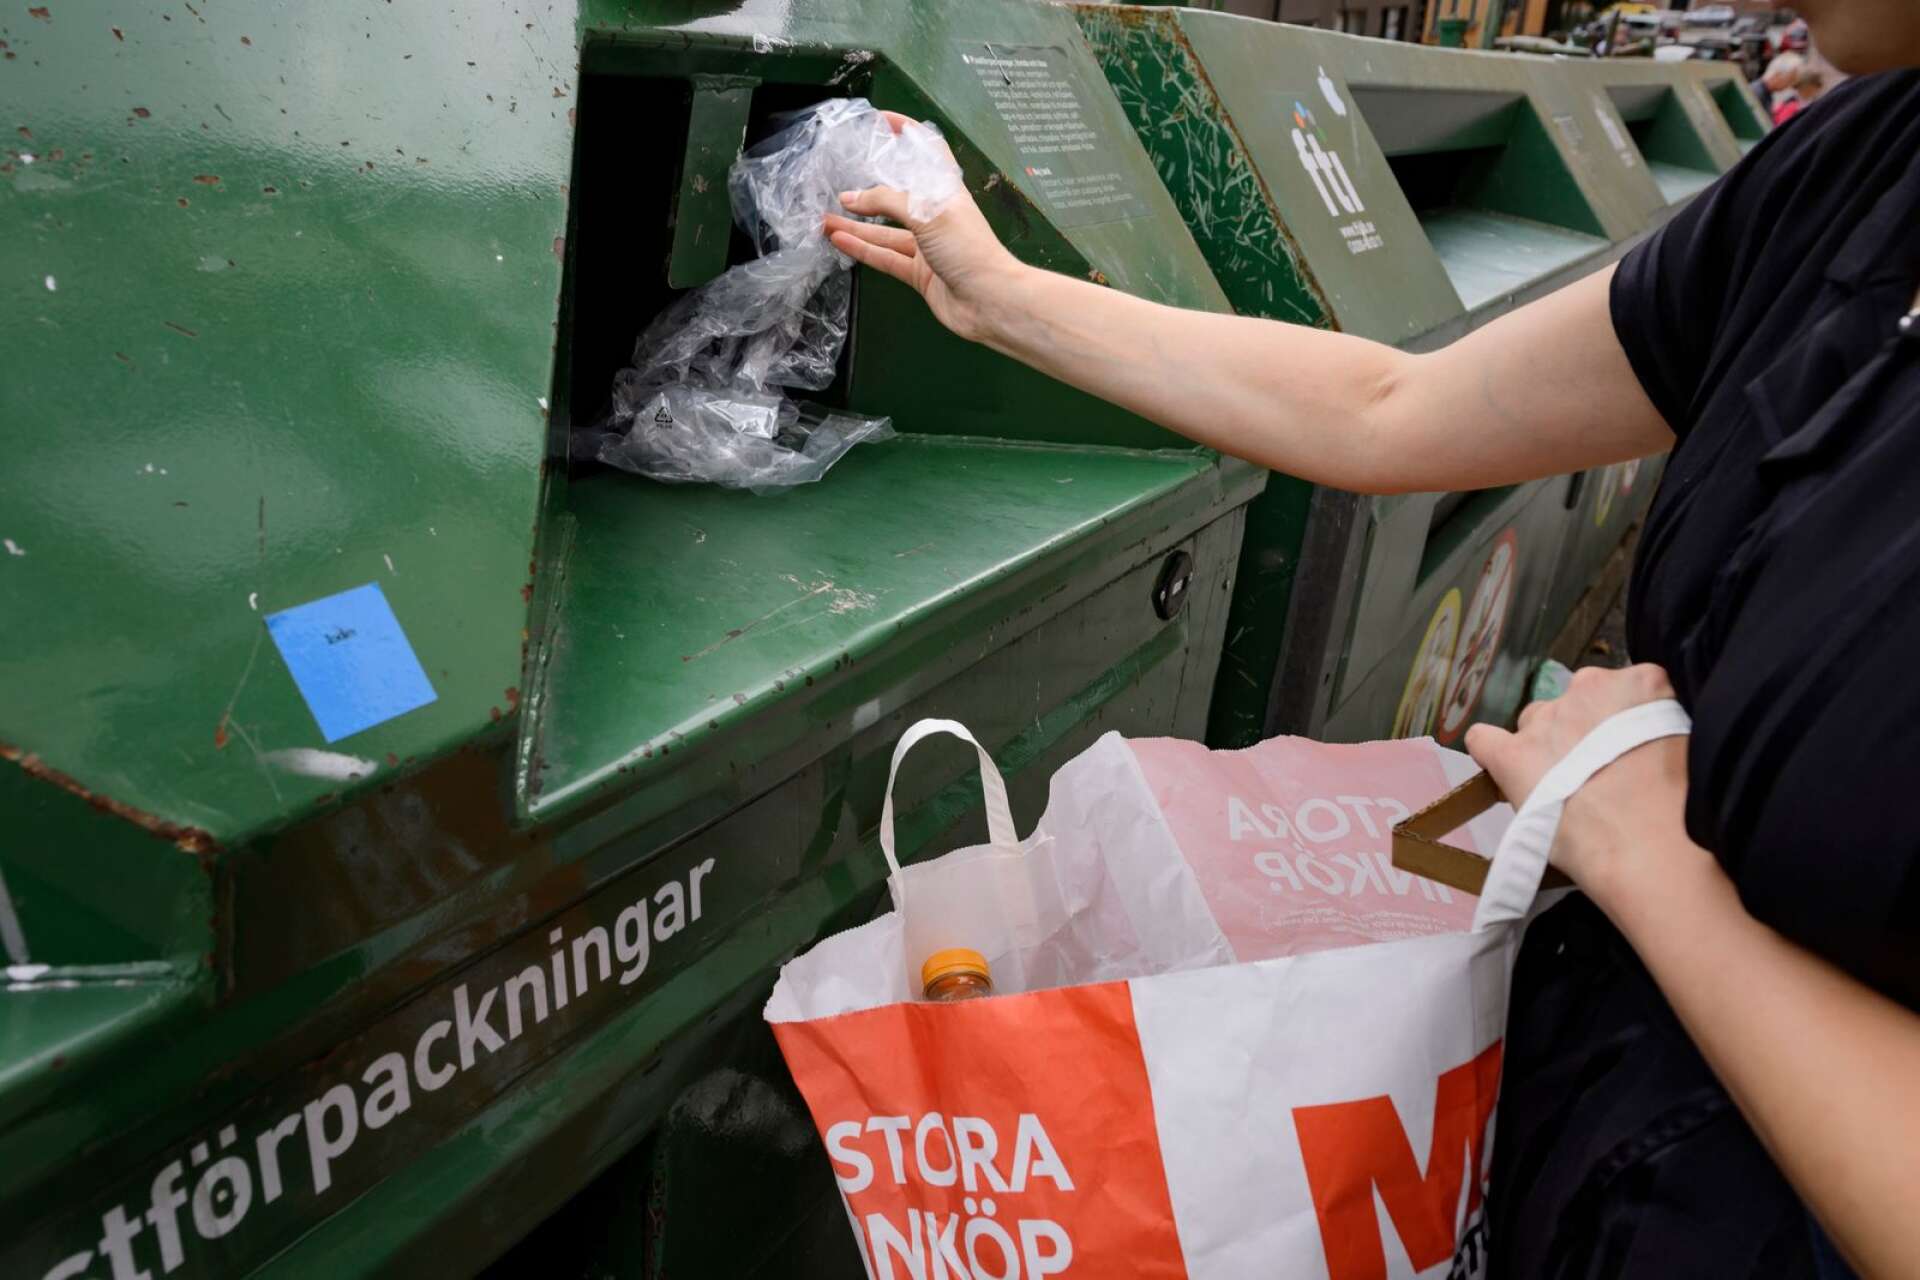 Även om Sverige tillsammans med Tyskland blivit världsledande på återvinning återstår fortfarande massor att göra, konstaterar Helén Williams. ”Jag kan tycka att det är lite sjukt att inte förpackningsinsamlingen ligger vid matbutikerna. Nu tar ju många bilen extra för att återvinna”, säger Fredrik Wikström.